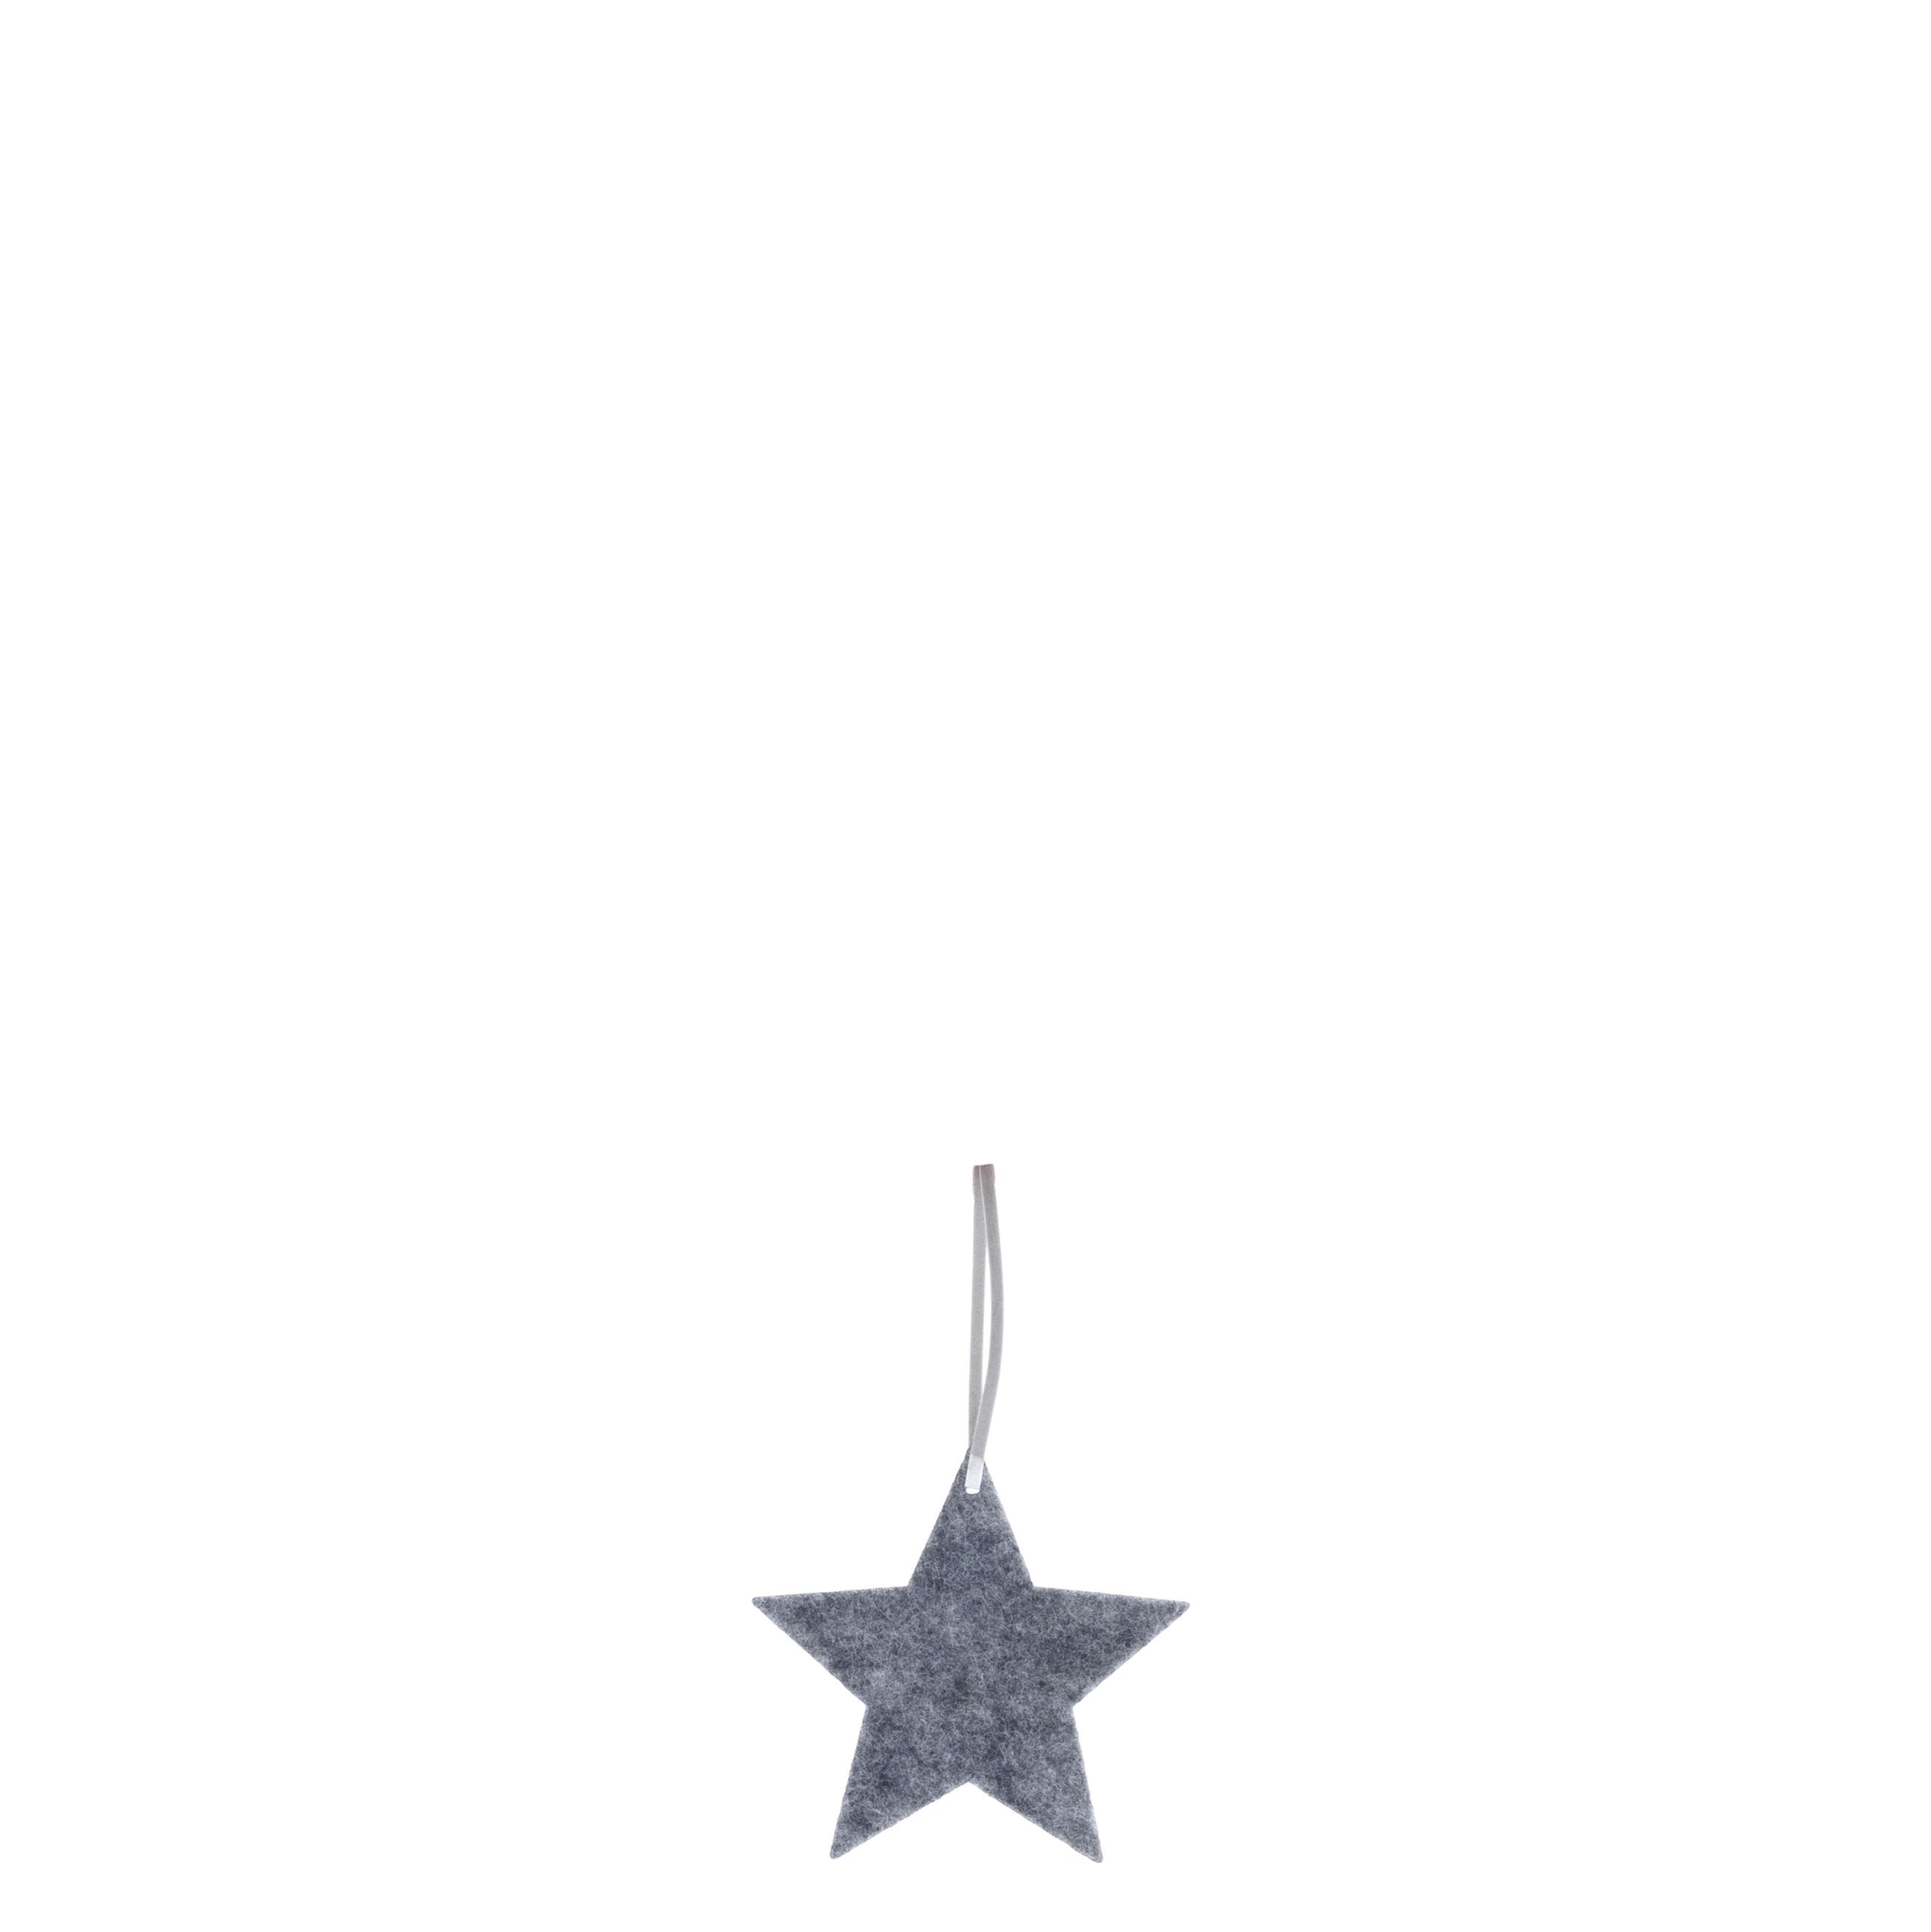 Felt Star Decoration | Starsta | Grey | by Storefactory - Lifestory - Storefactory